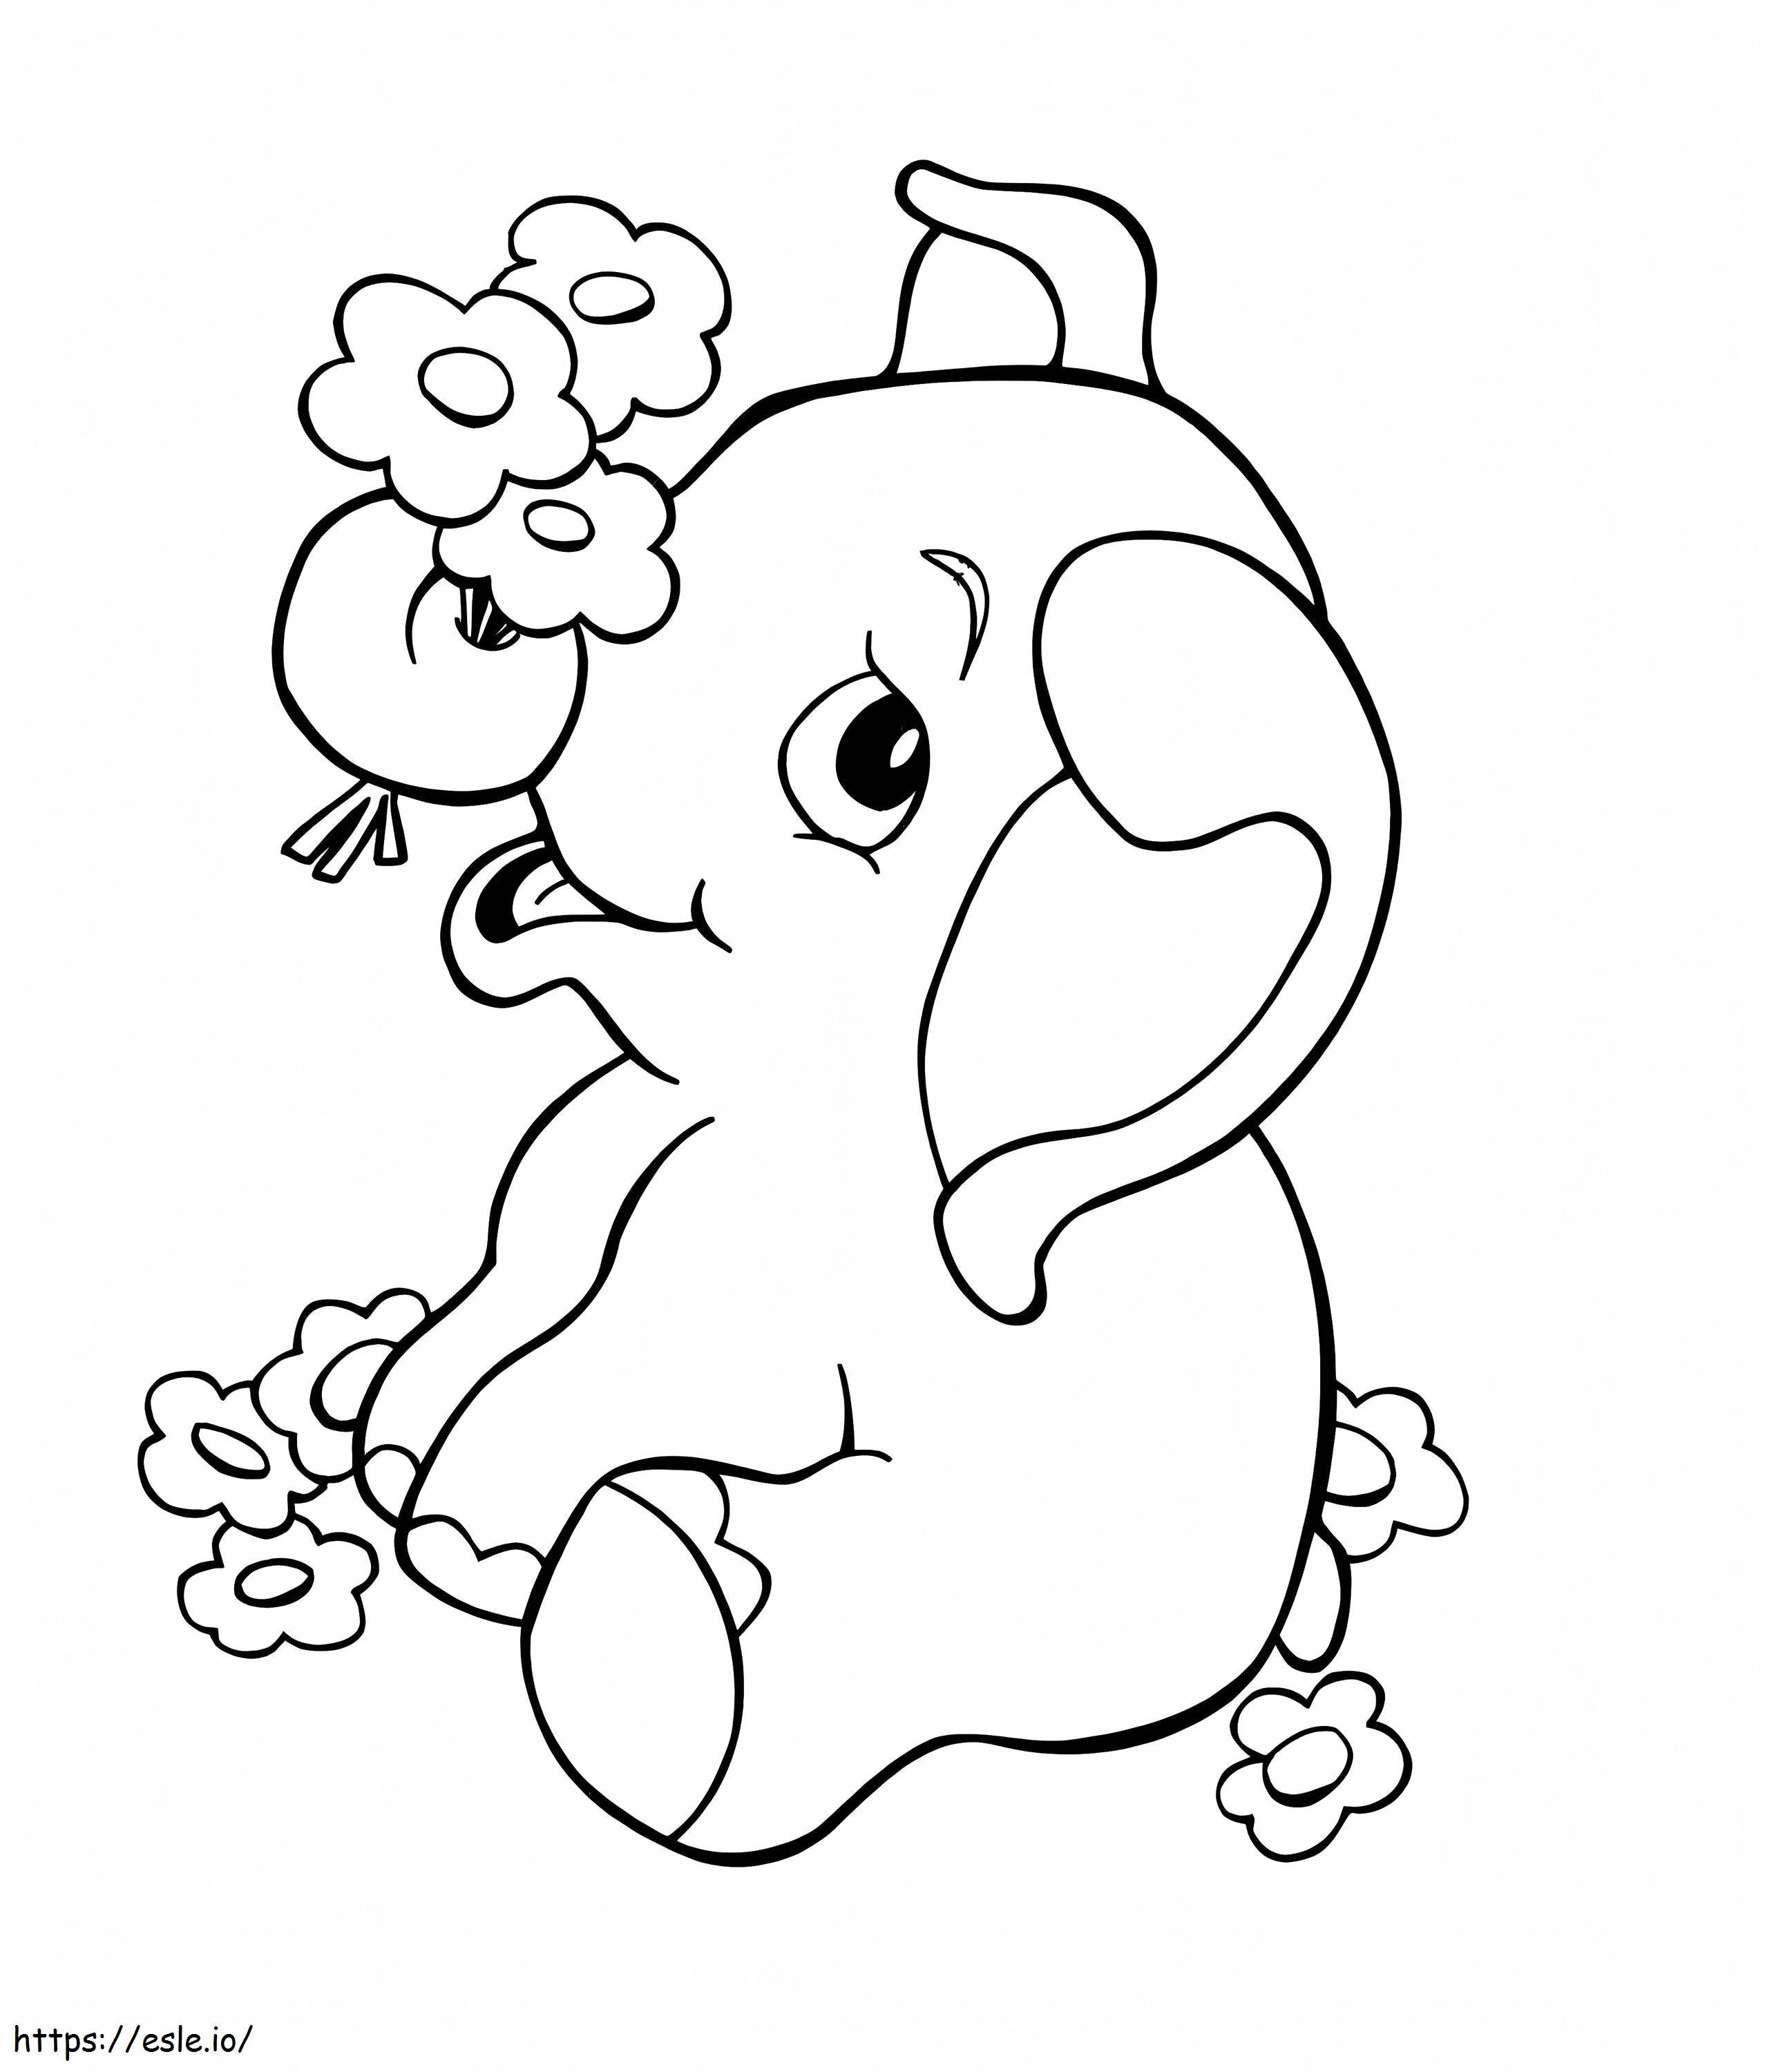 Coloriage 1570526314 Éléphant pour enfants Éléphant de dessin animé Meilleurs prêts d'amélioration de l'habitat pour enfants imprimables gratuitement en cas de mauvais crédit à imprimer dessin